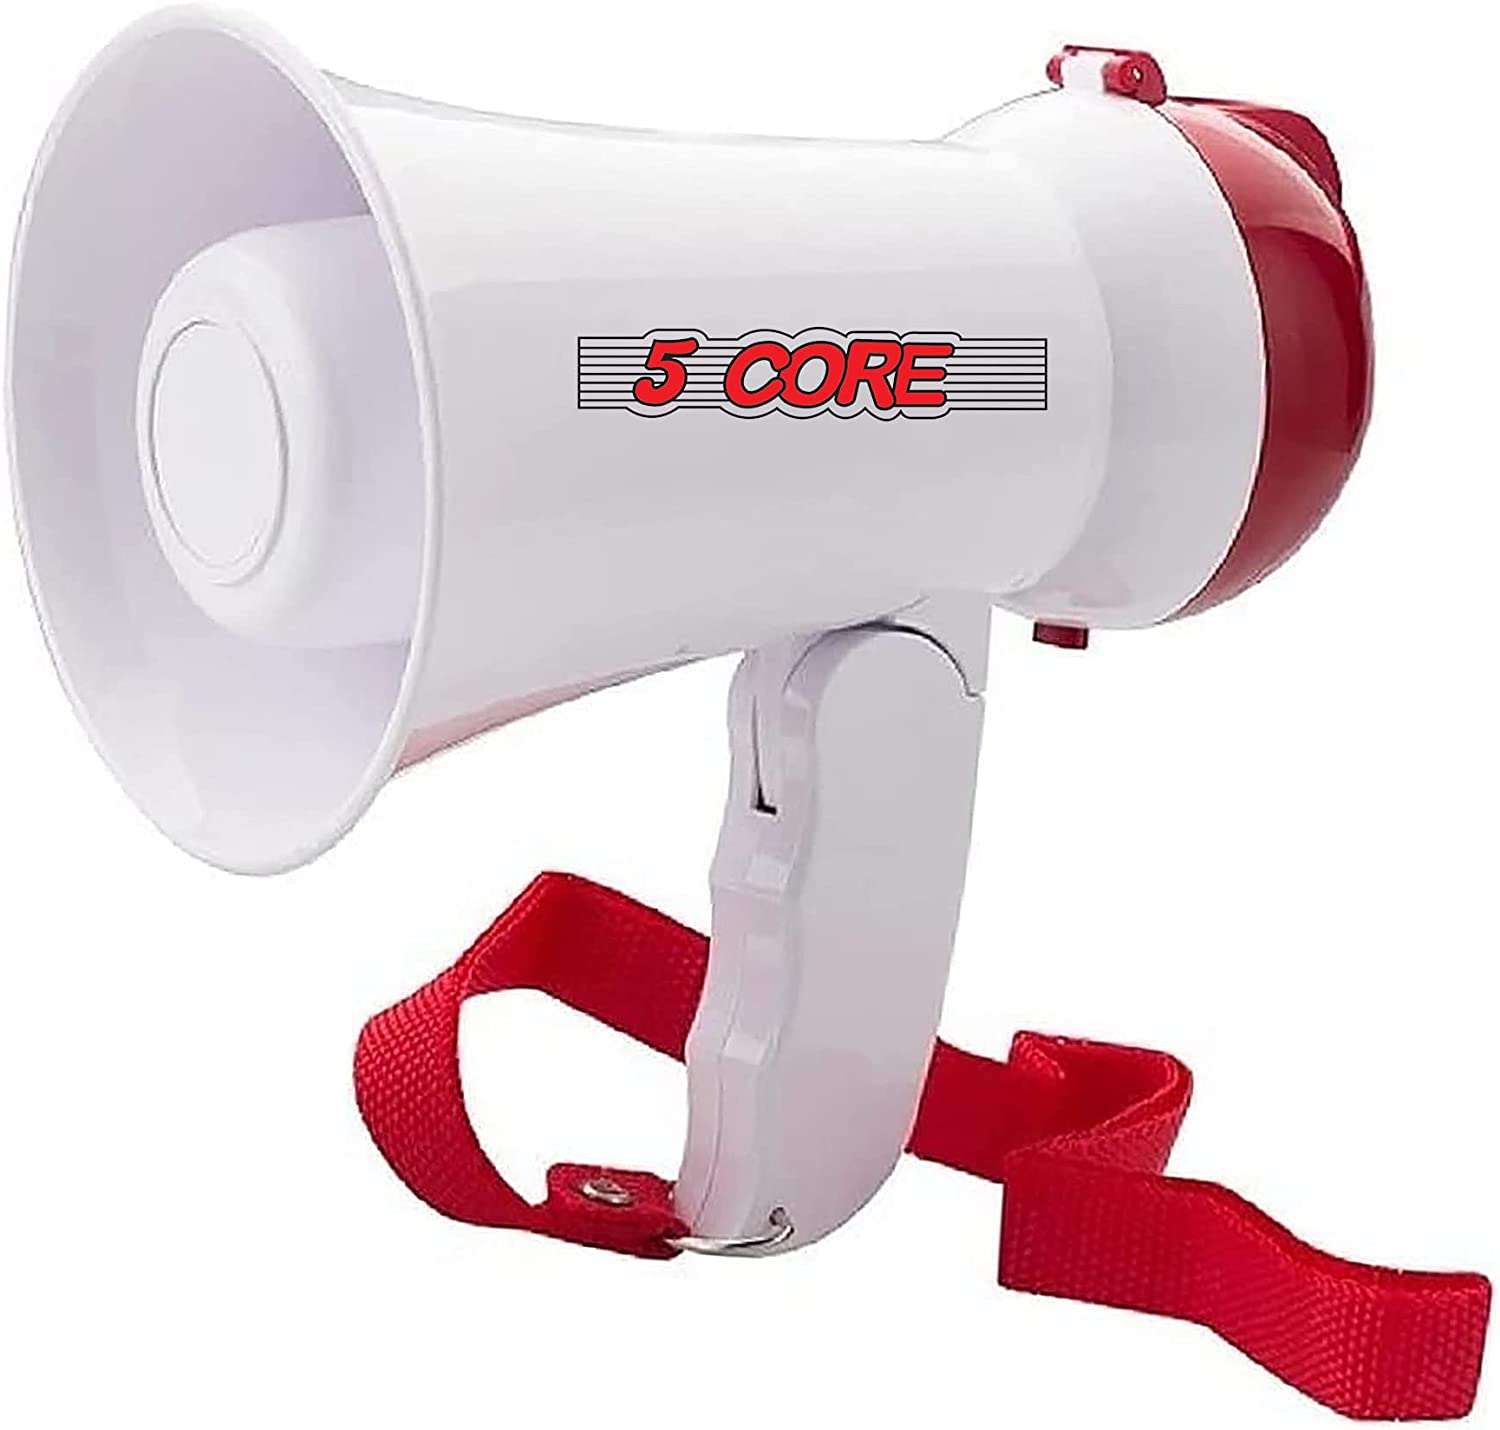 5 Core Kids Mini Megaphone Bullhorn Toy PA Speaker 15W Bull Horn Loud  Speaker Portable w Volume Control Siren Alarm Noise Maker Weather Resistant  for